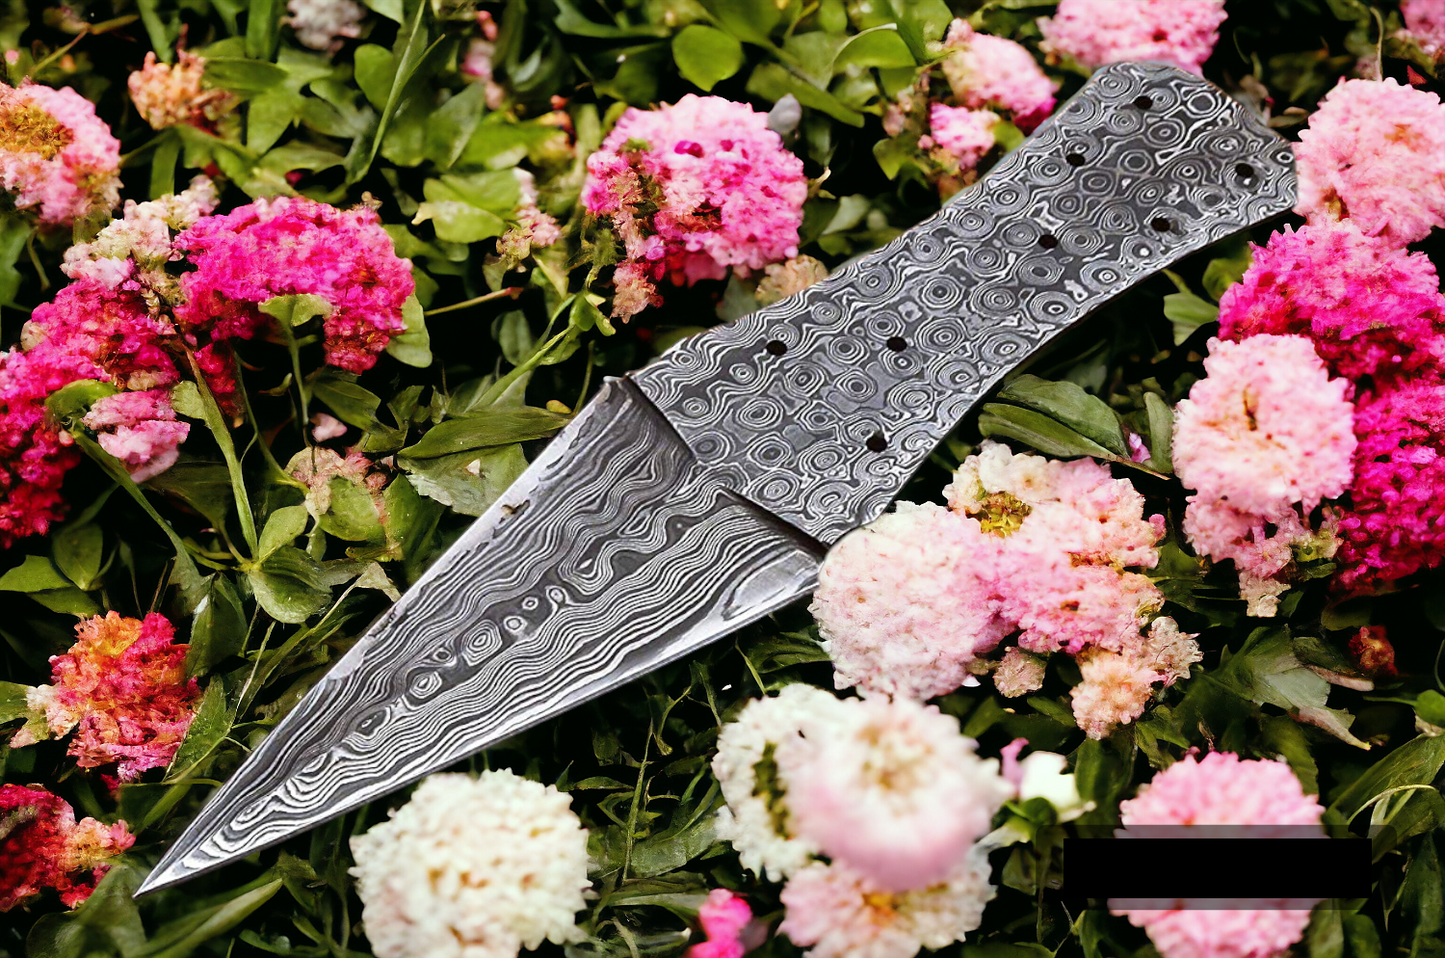 Custom Handmade Damascus Steel Full Tang Blank Blade Knife for Knife Making Supplies-DS6